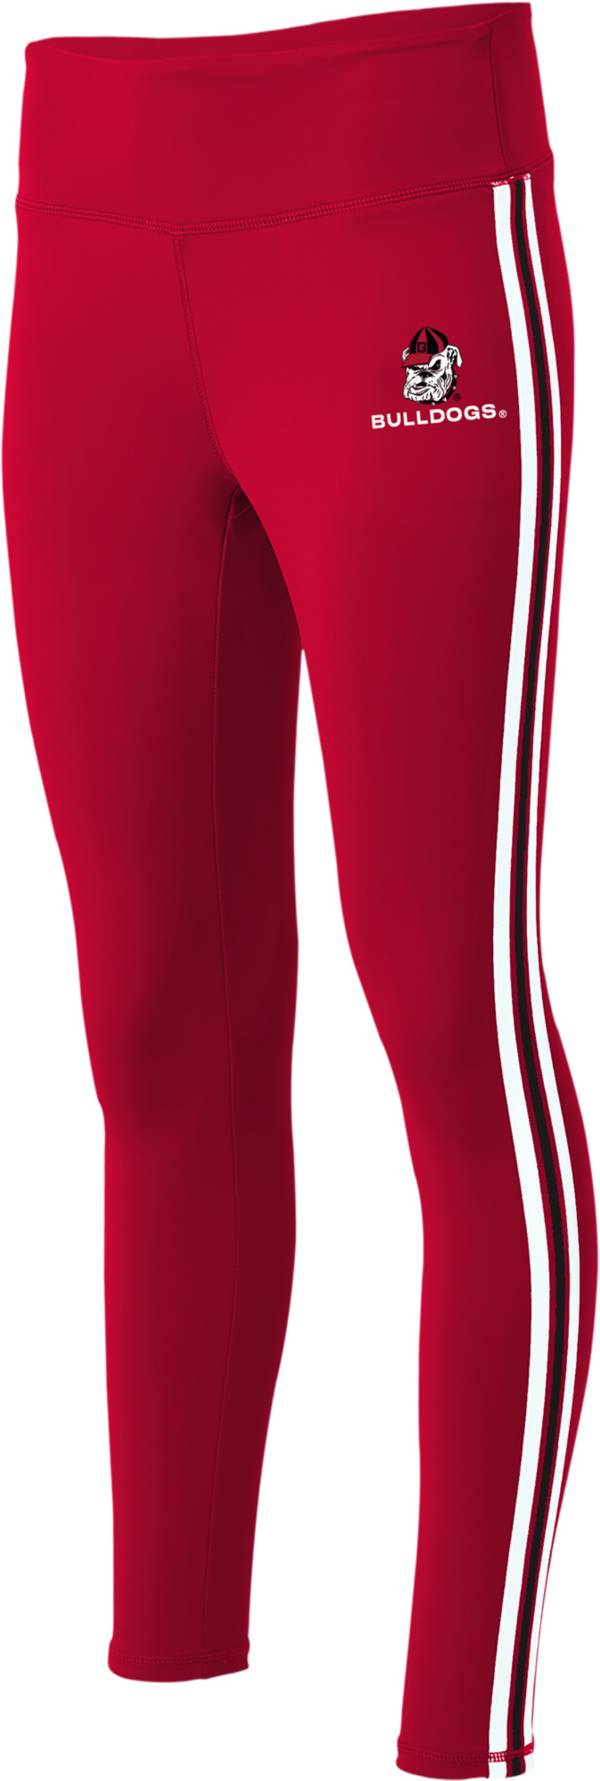 Stripe Leggings Womens Black and Red Striped Leggings Fashion